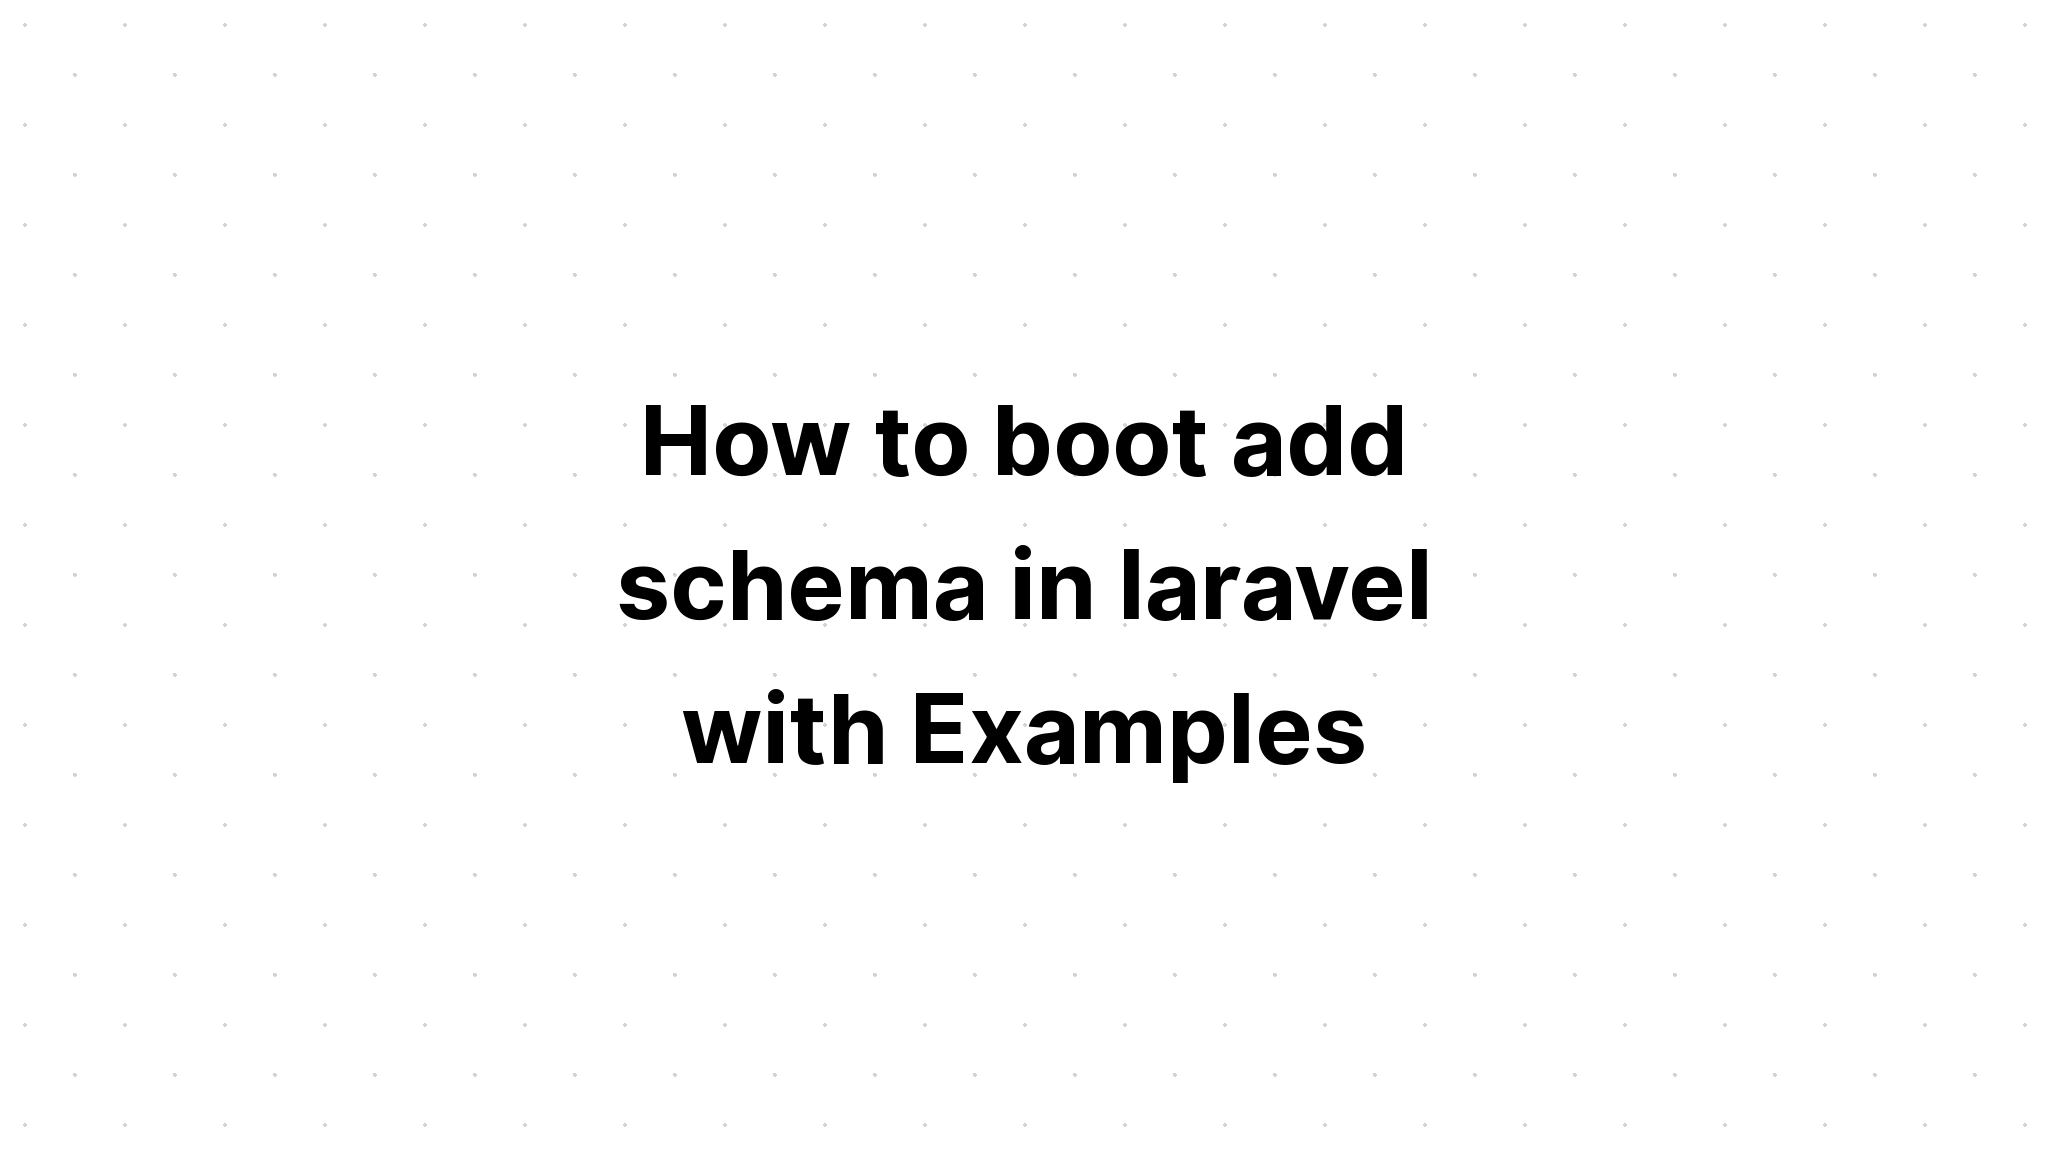 Cách khởi động thêm lược đồ trong laravel với các ví dụ